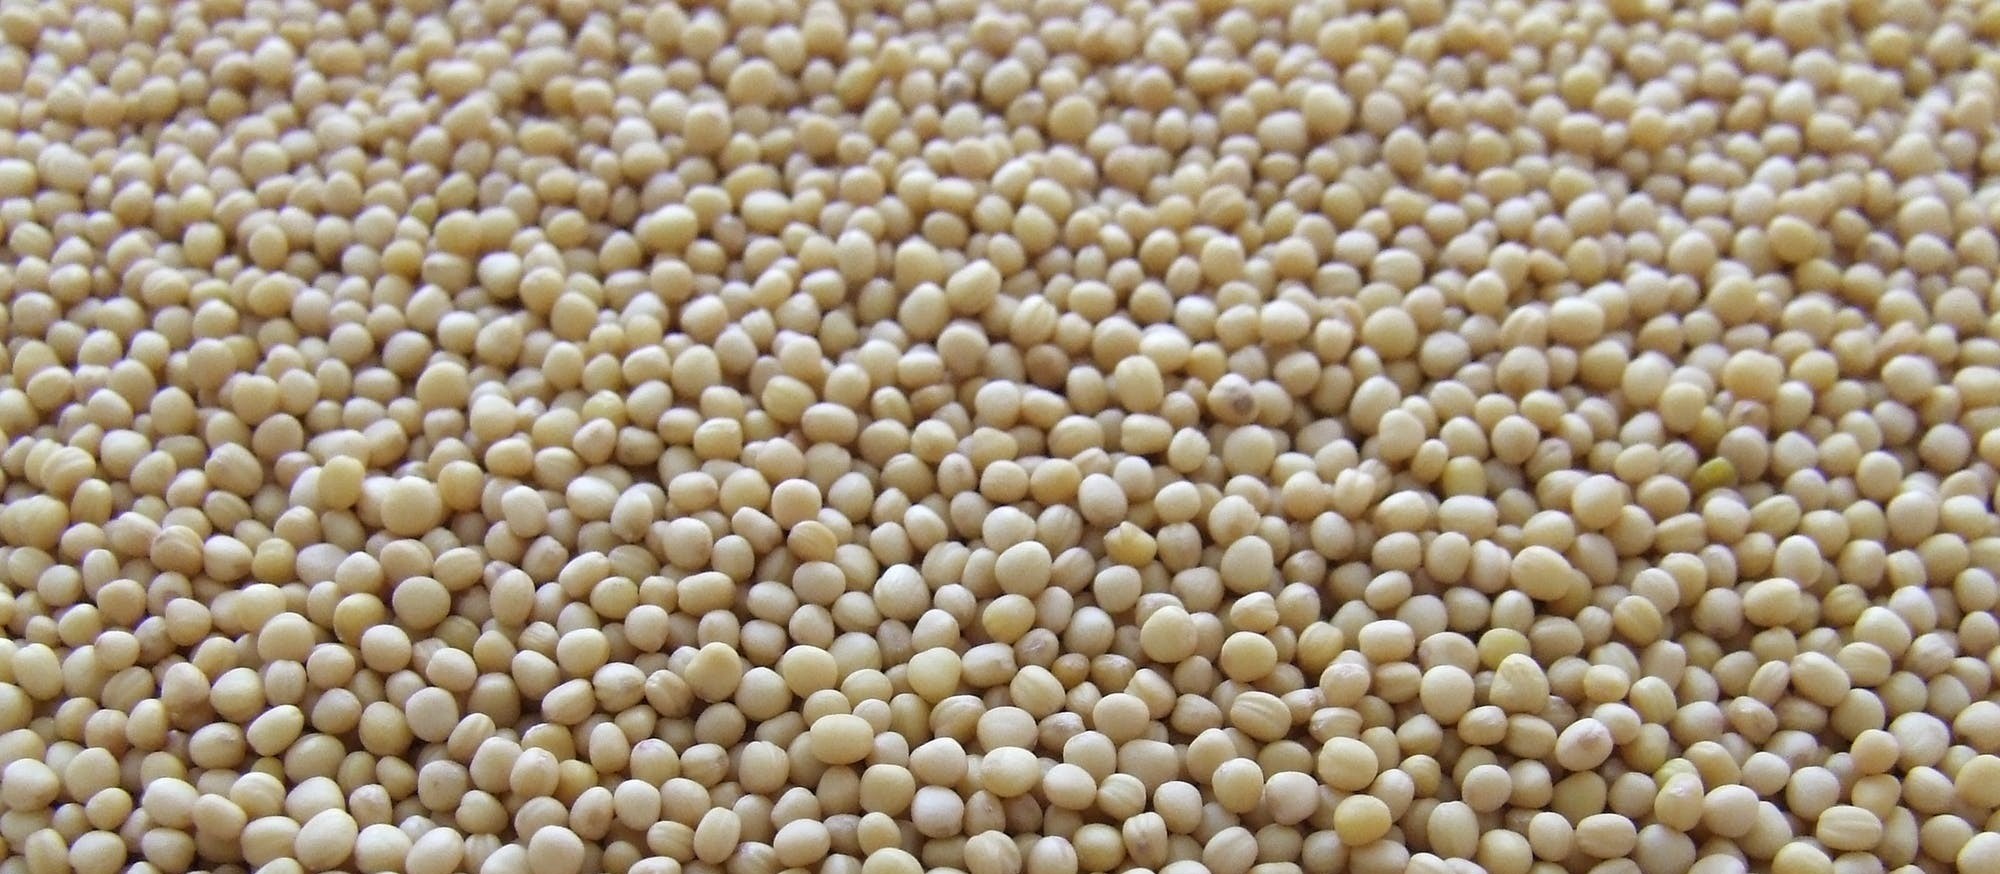 Produção de soja no PR deve ultrapassar 20 mi de toneladas